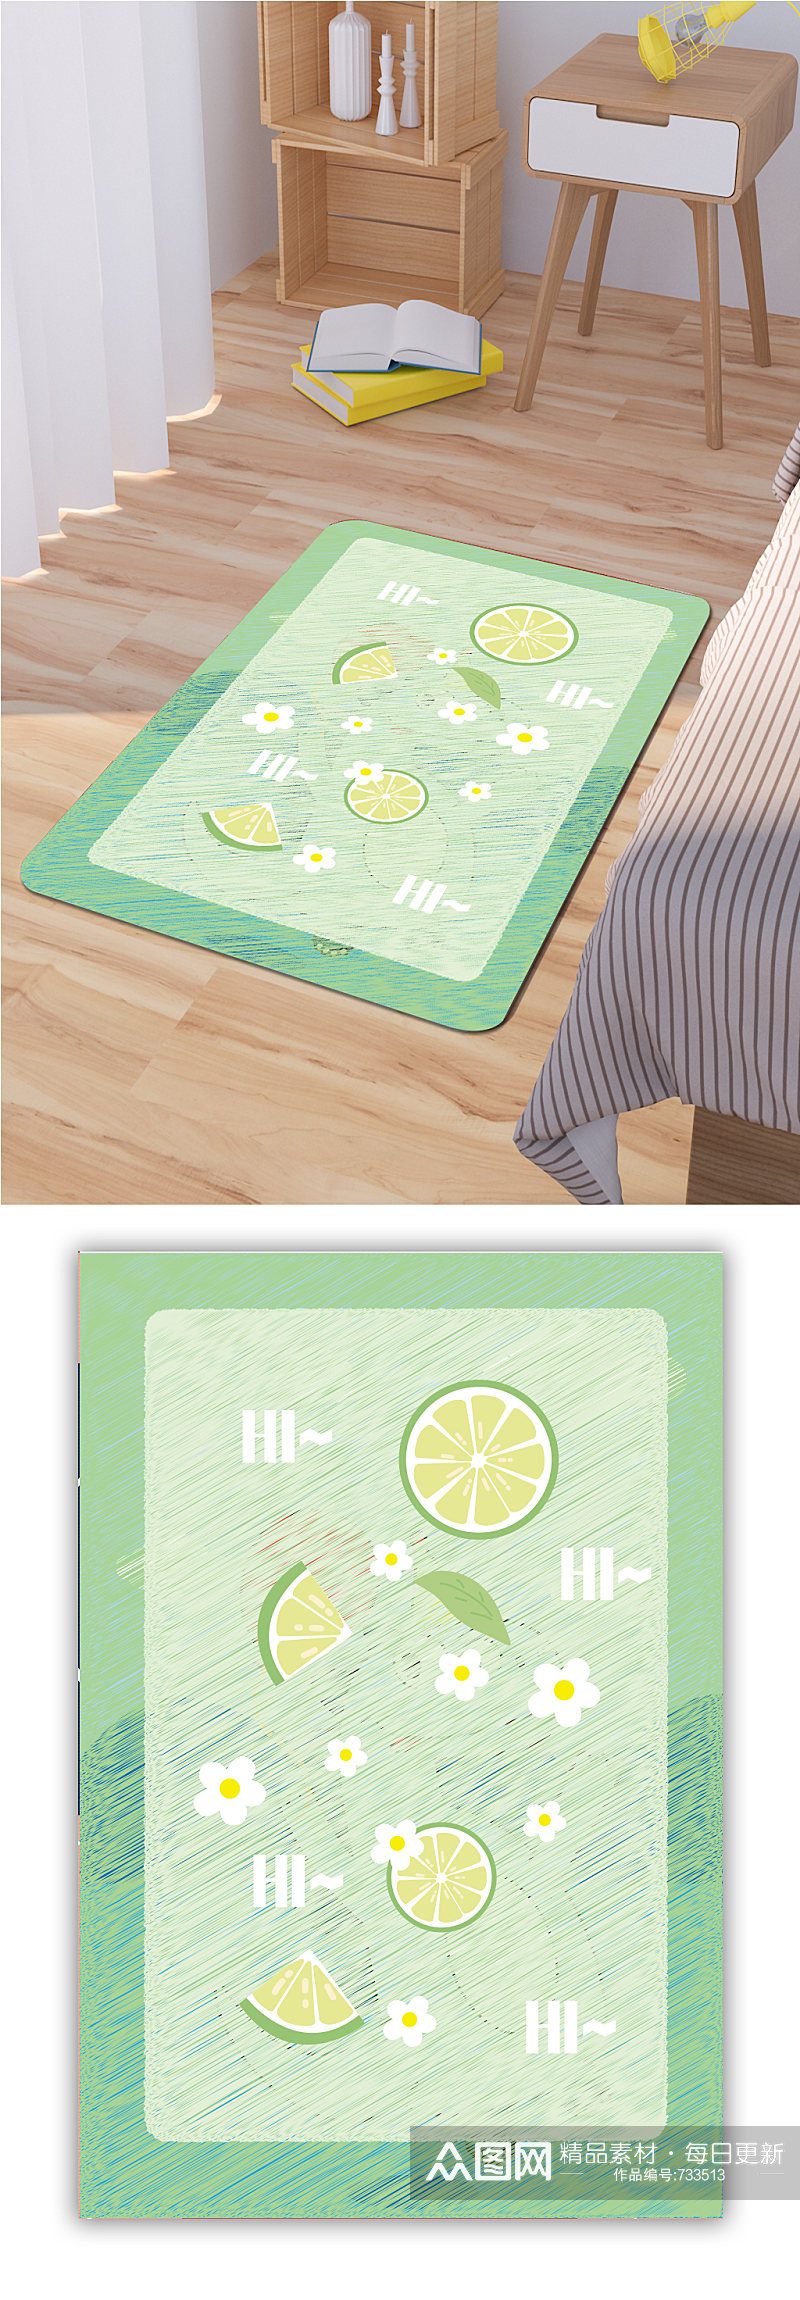 卡通地毯柠檬图案素材